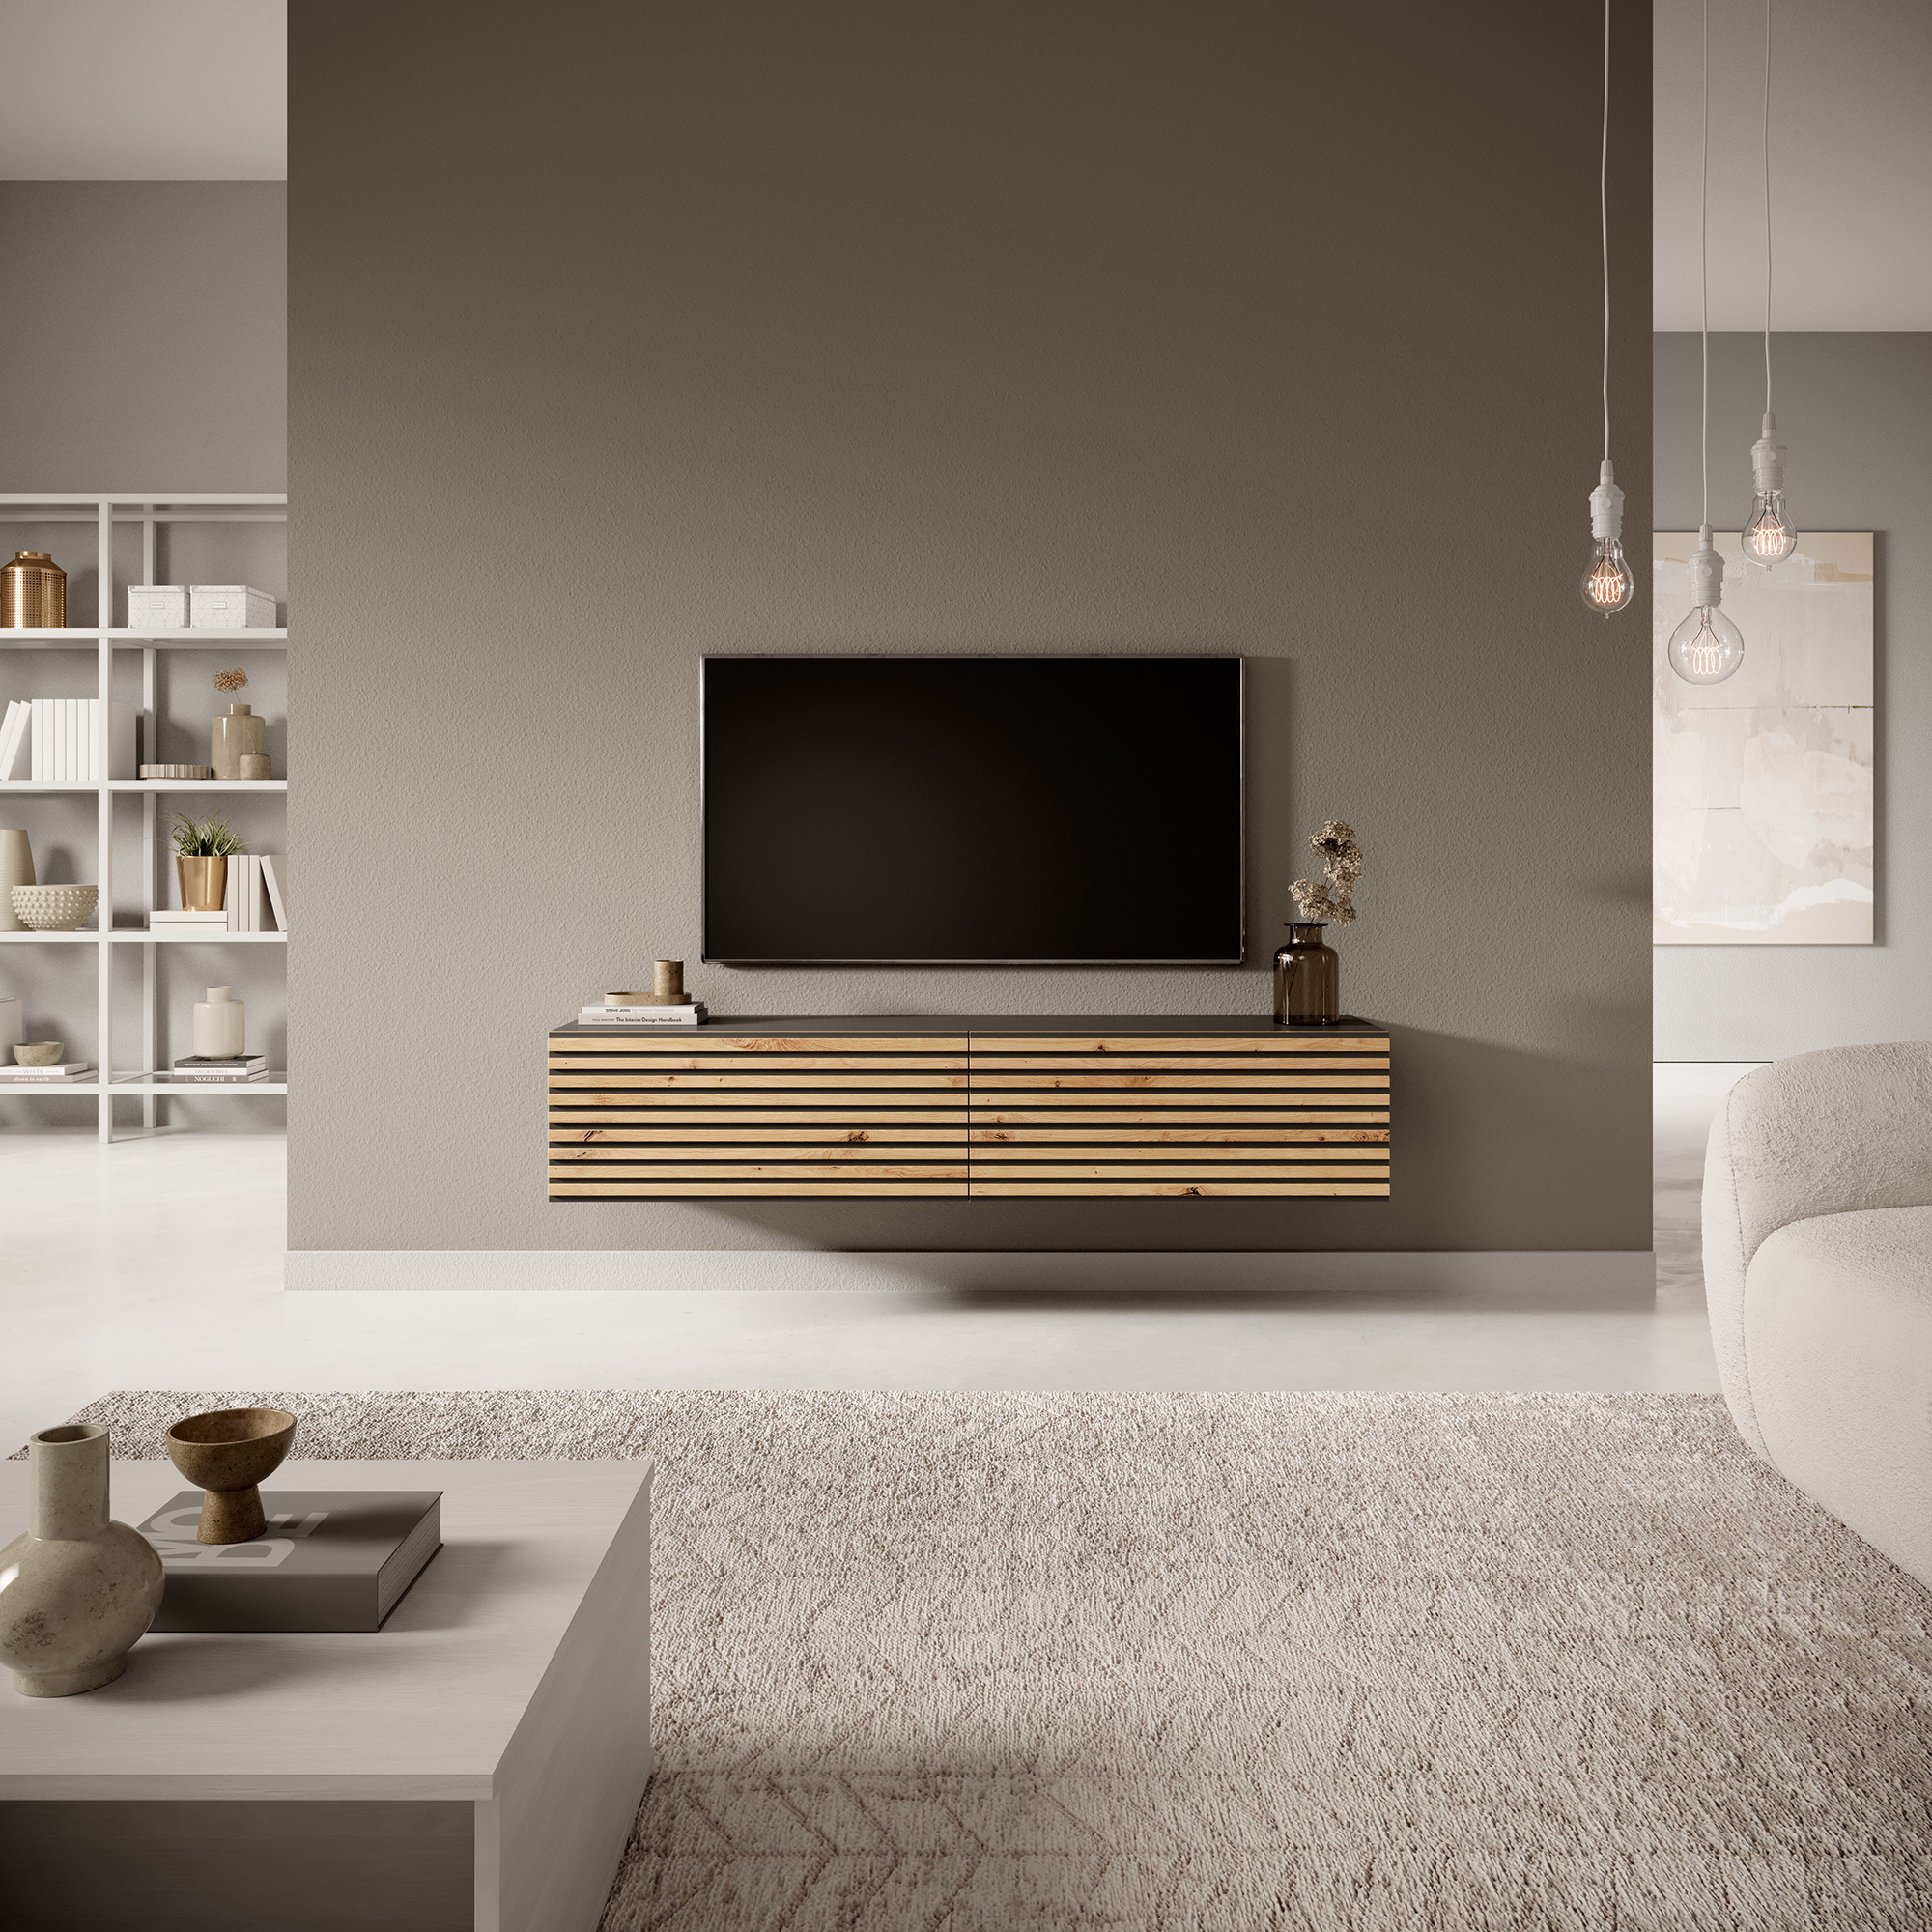 PAVAS Meuble TV 140 cm graphite avec façade à lamelles en chêne artisanal et inserts graphite